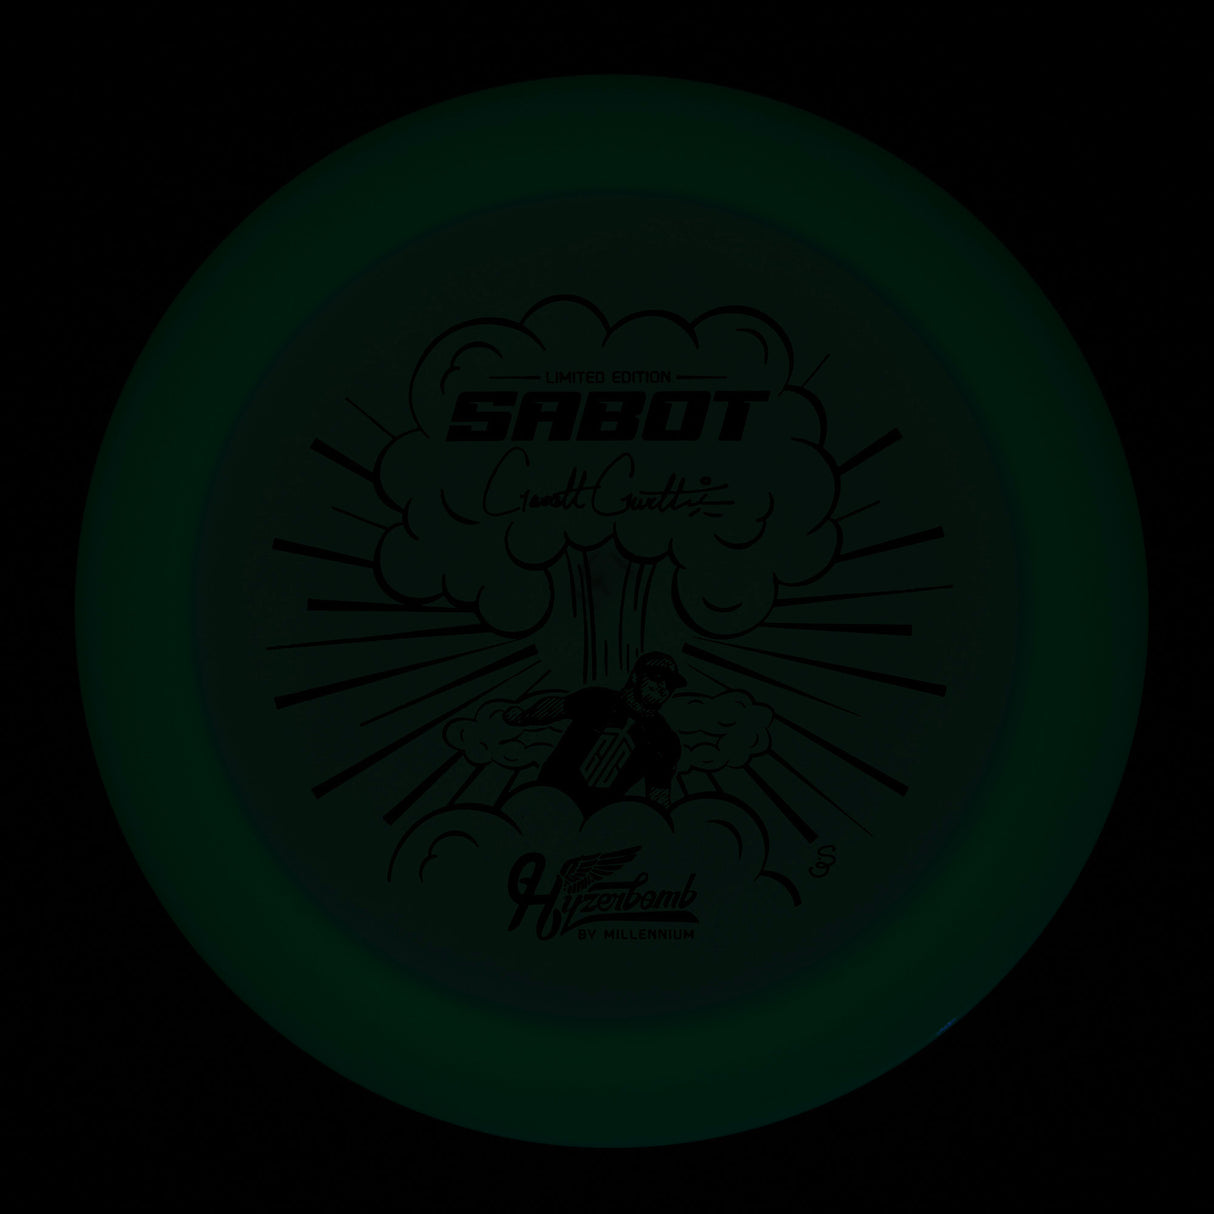 Hyzerbomb Sabot - Garrett Gurthie Recon Color Lunar  171g | Style 0001